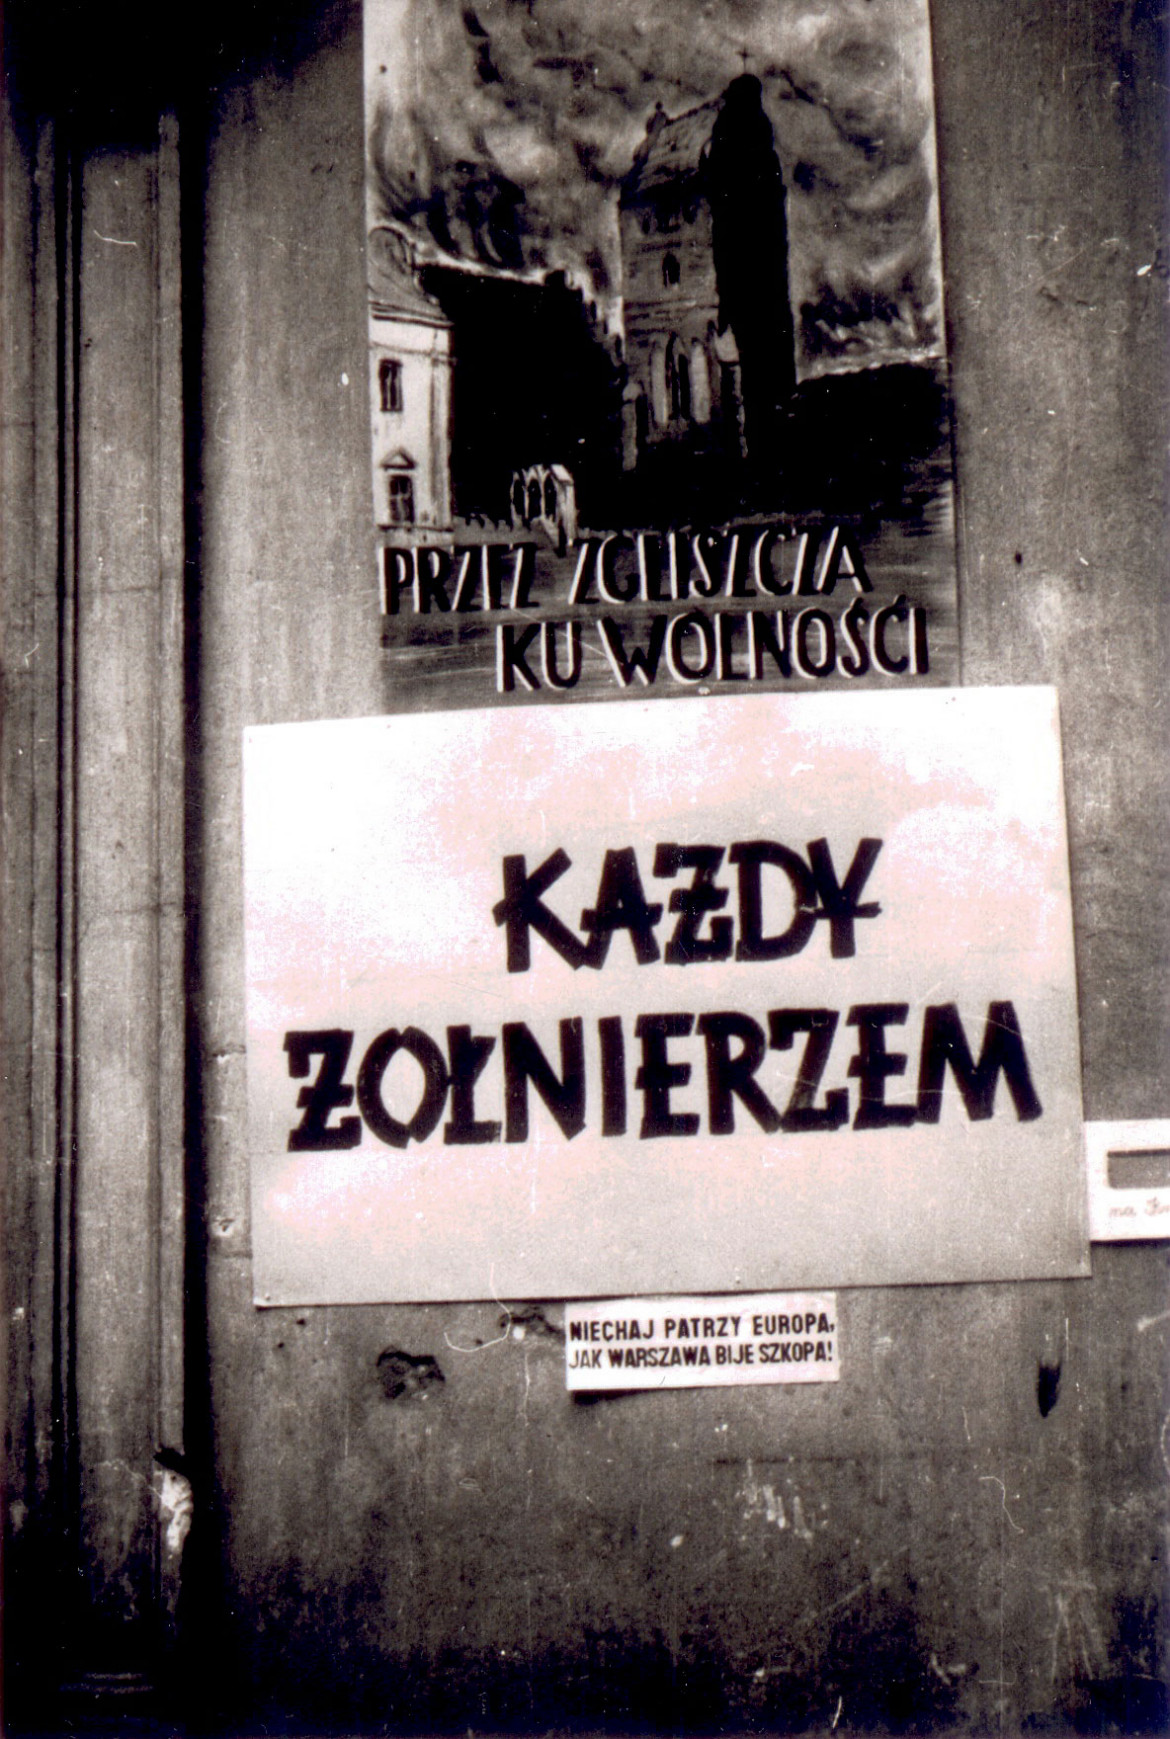 Zdjęcie z wystawy na Placu Trzech Krzyży w Warszawie